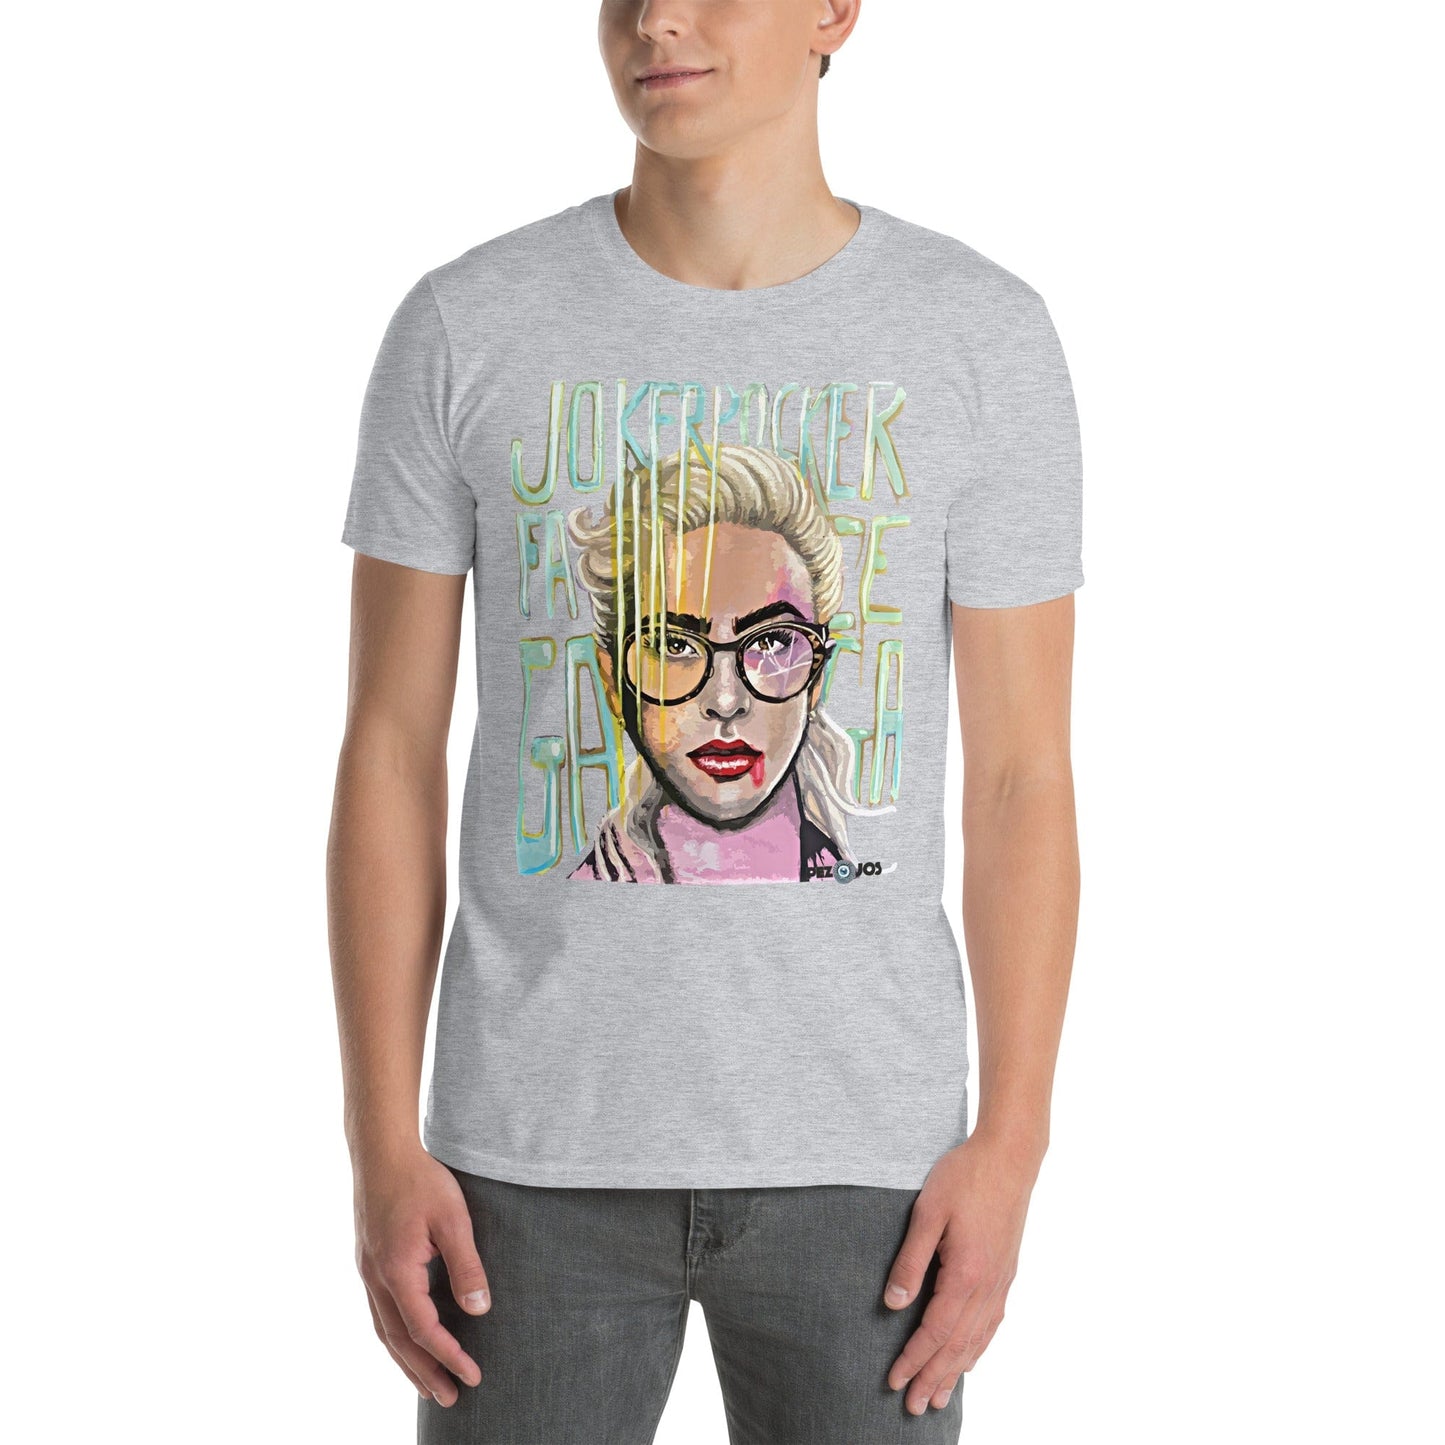 Camiseta de manga corta unisex Folie Gaga